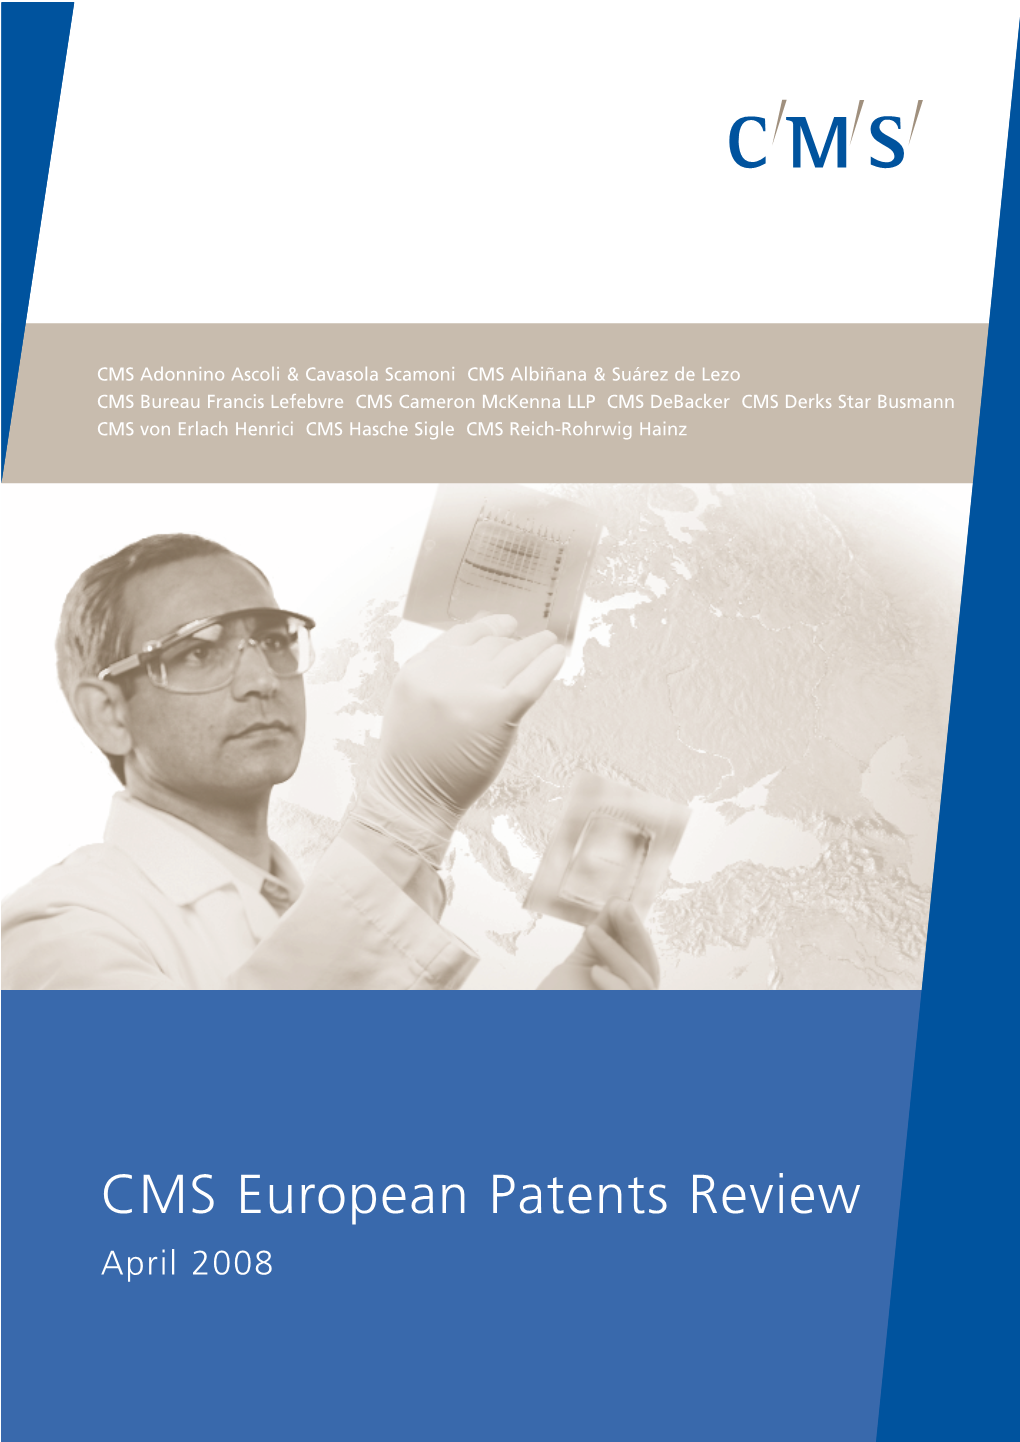 CMS European Patents Review April 2008 Introduction